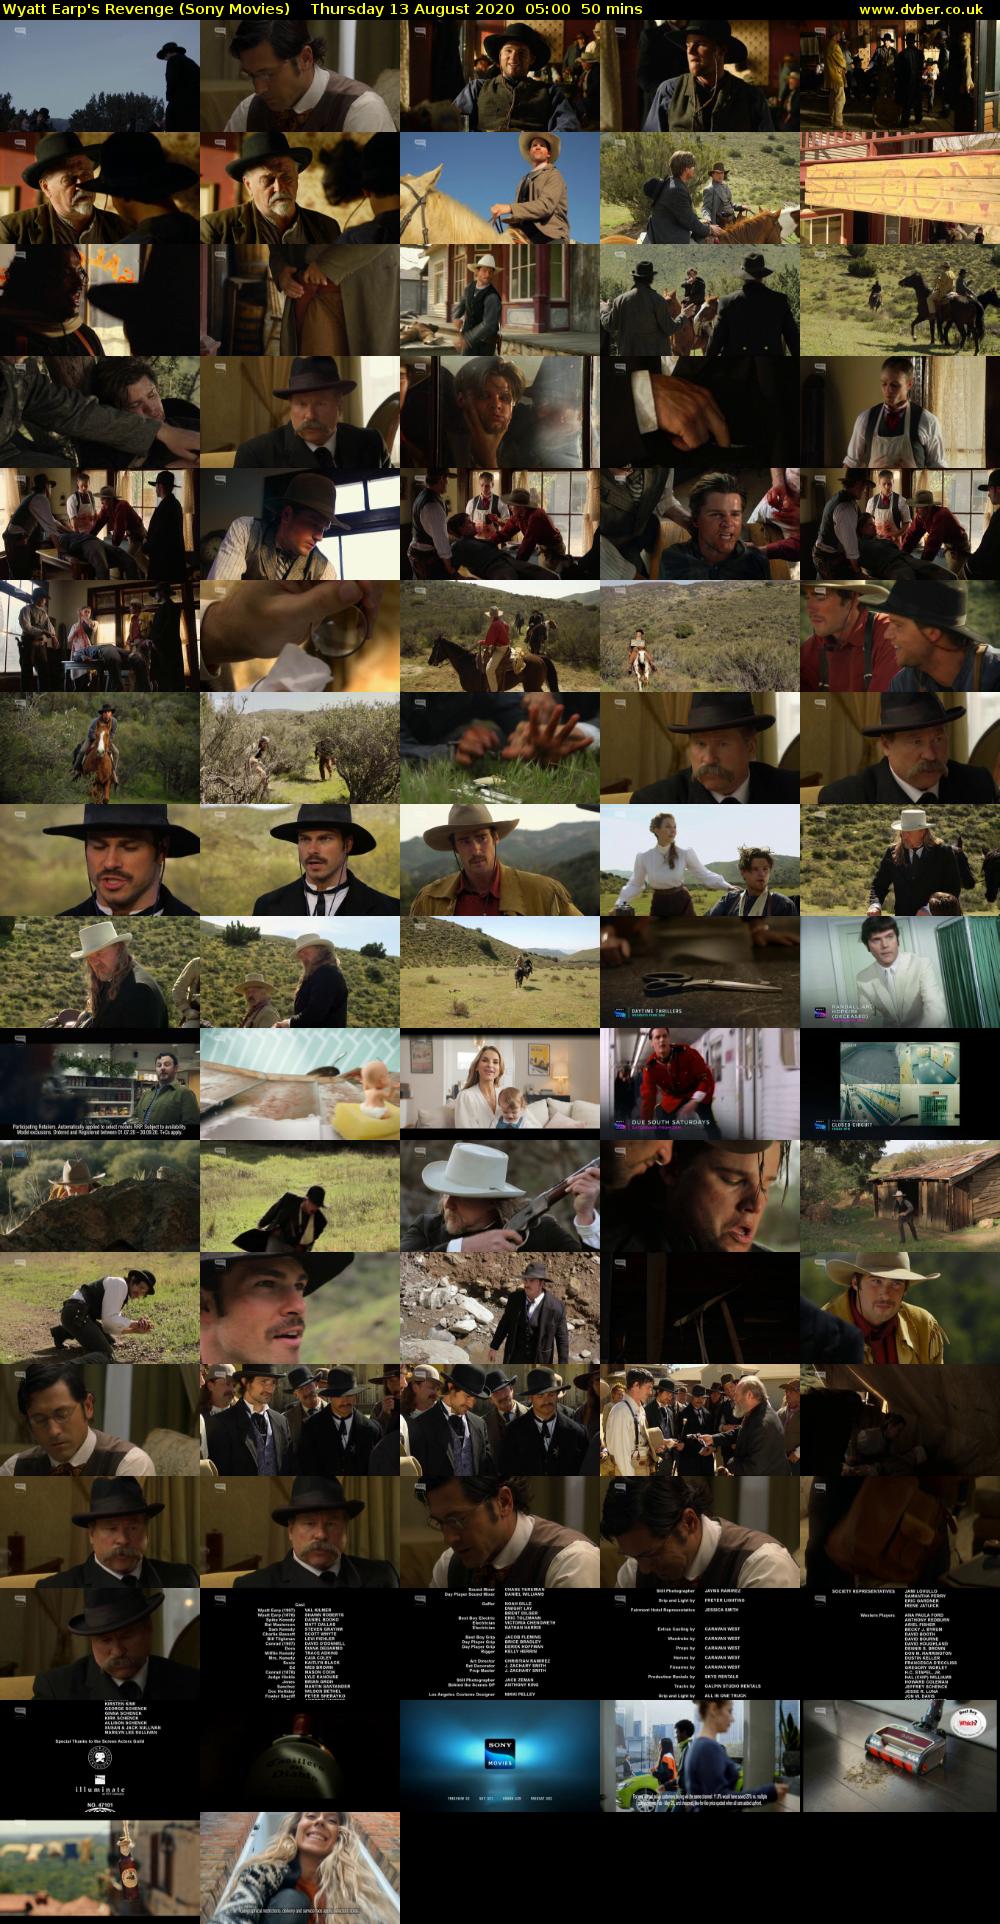 Wyatt Earp's Revenge (Sony Movies) Thursday 13 August 2020 05:00 - 05:50